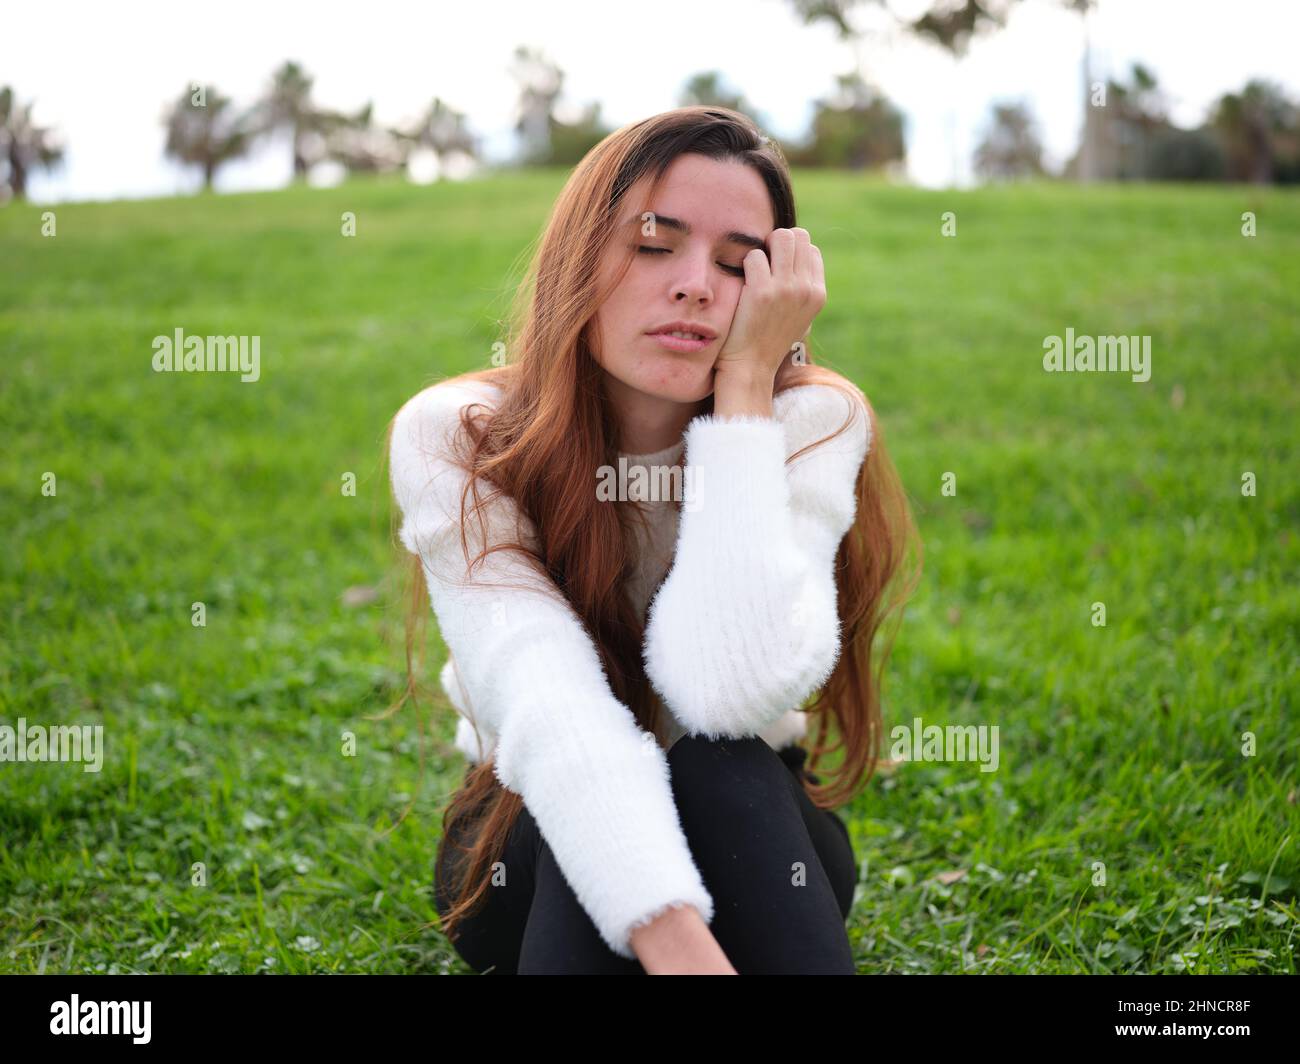 Eine junge Frau im Park sitzt auf dem Gras, mit einer Hand auf ihrem Gesicht und schläft ein. Stockfoto